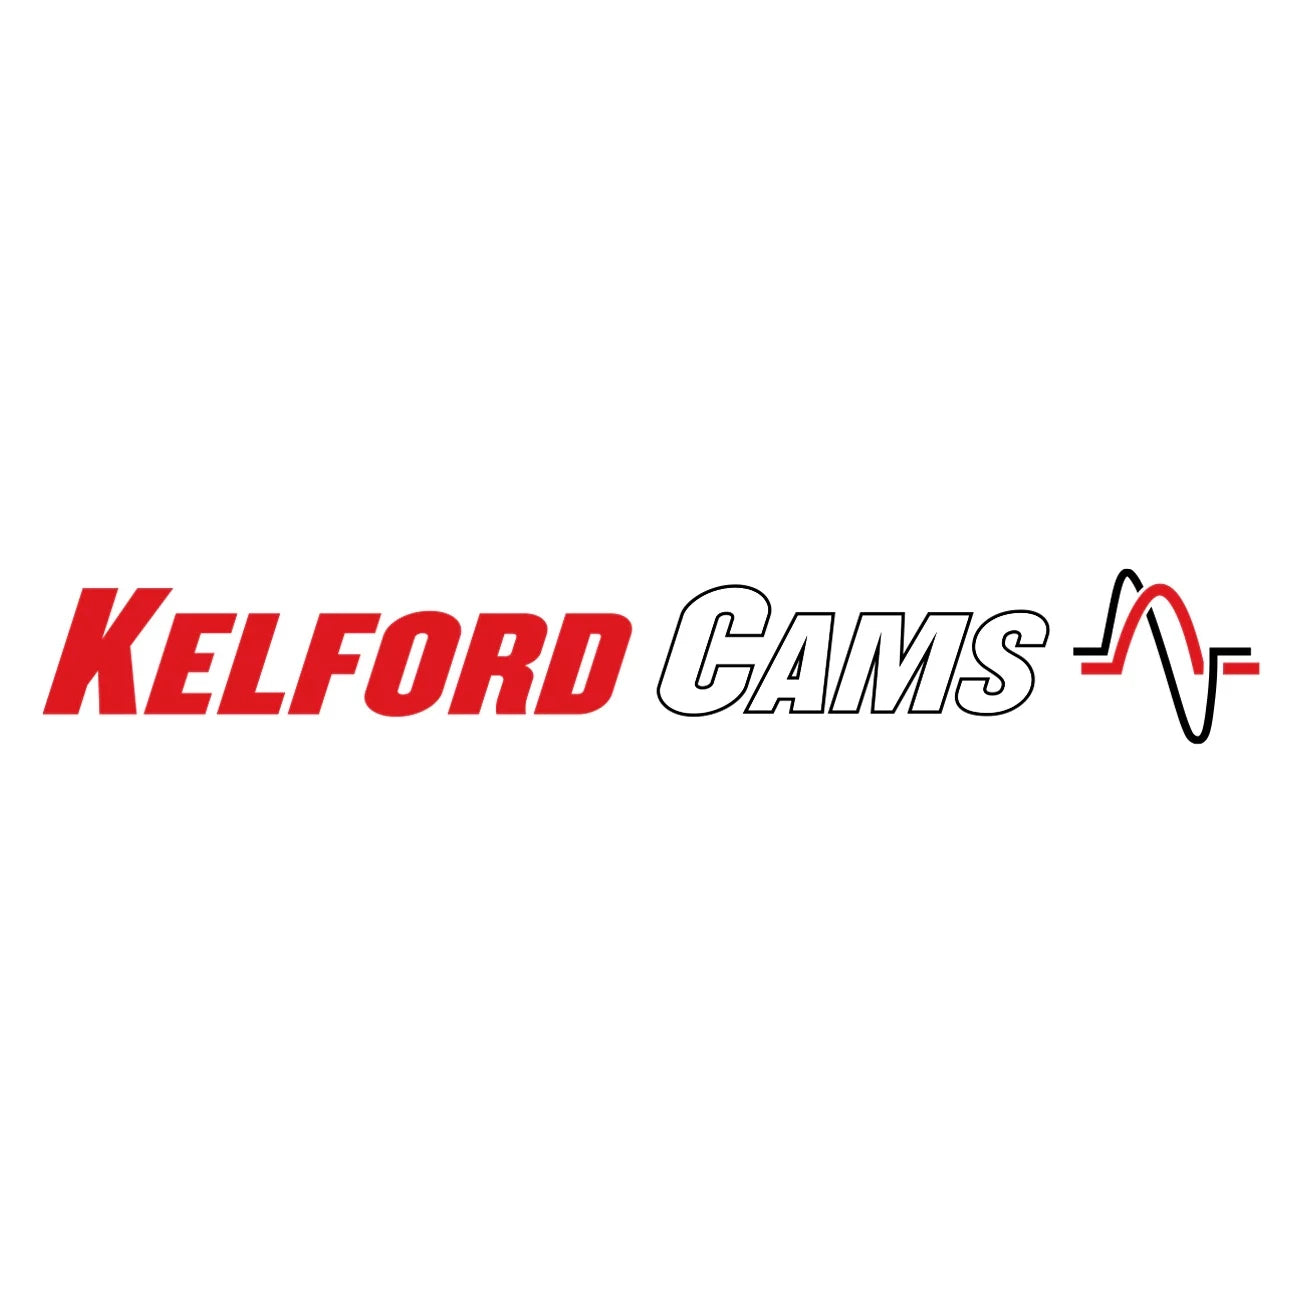 Kelford Cams